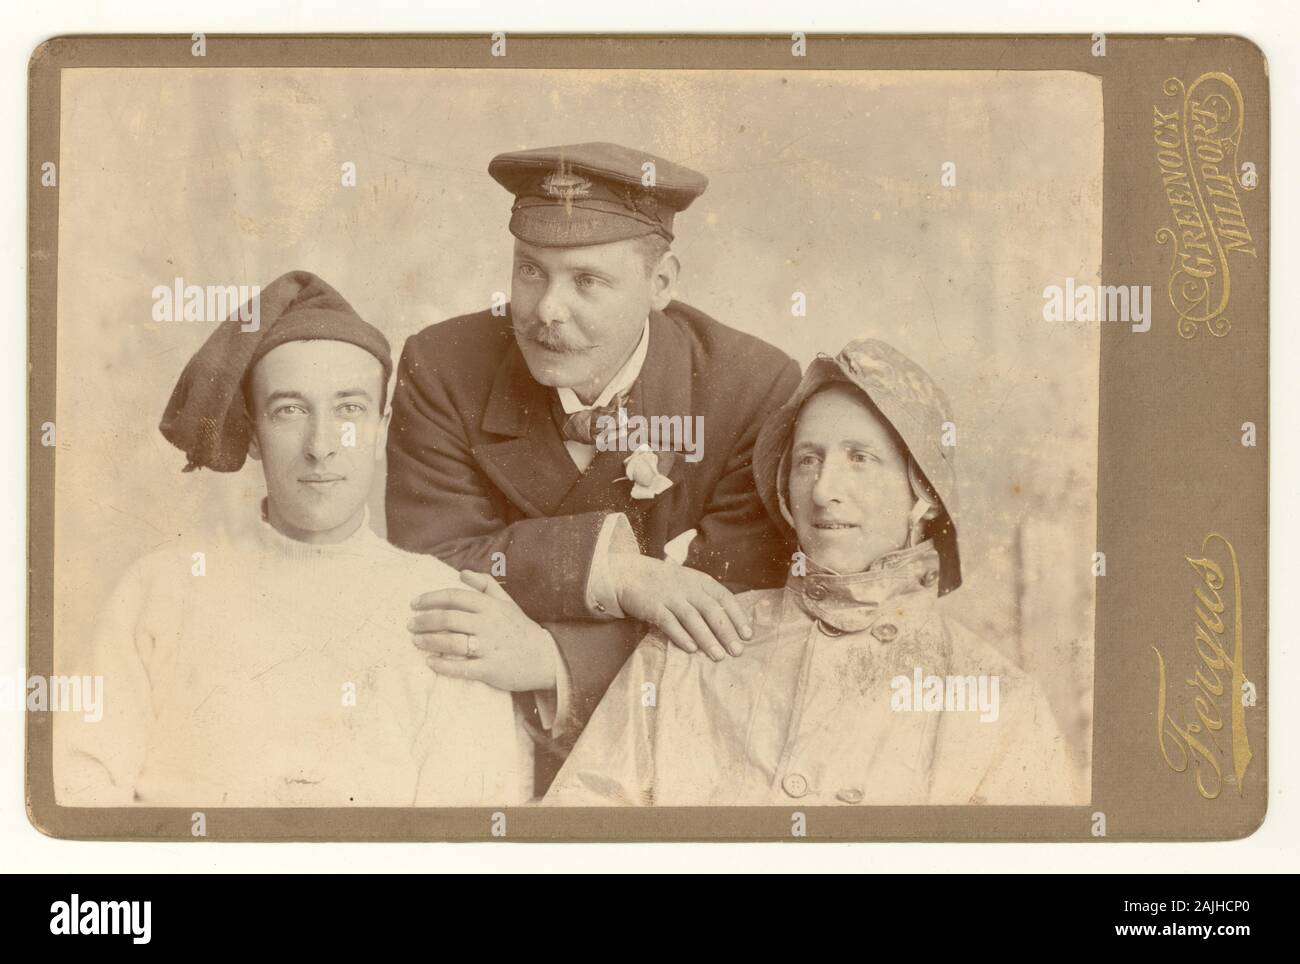 Ungewöhnliche viktorianische Kabinettkarte der Gruppe von 3 jungen schottischen Männern in Fischer / nautischen Outfits möglicherweise Schauspieler tragen Kostüme für ein Spiel, um 1890, Greenock oder Millport, Renfrewshire in Schottland, Großbritannien Stockfoto